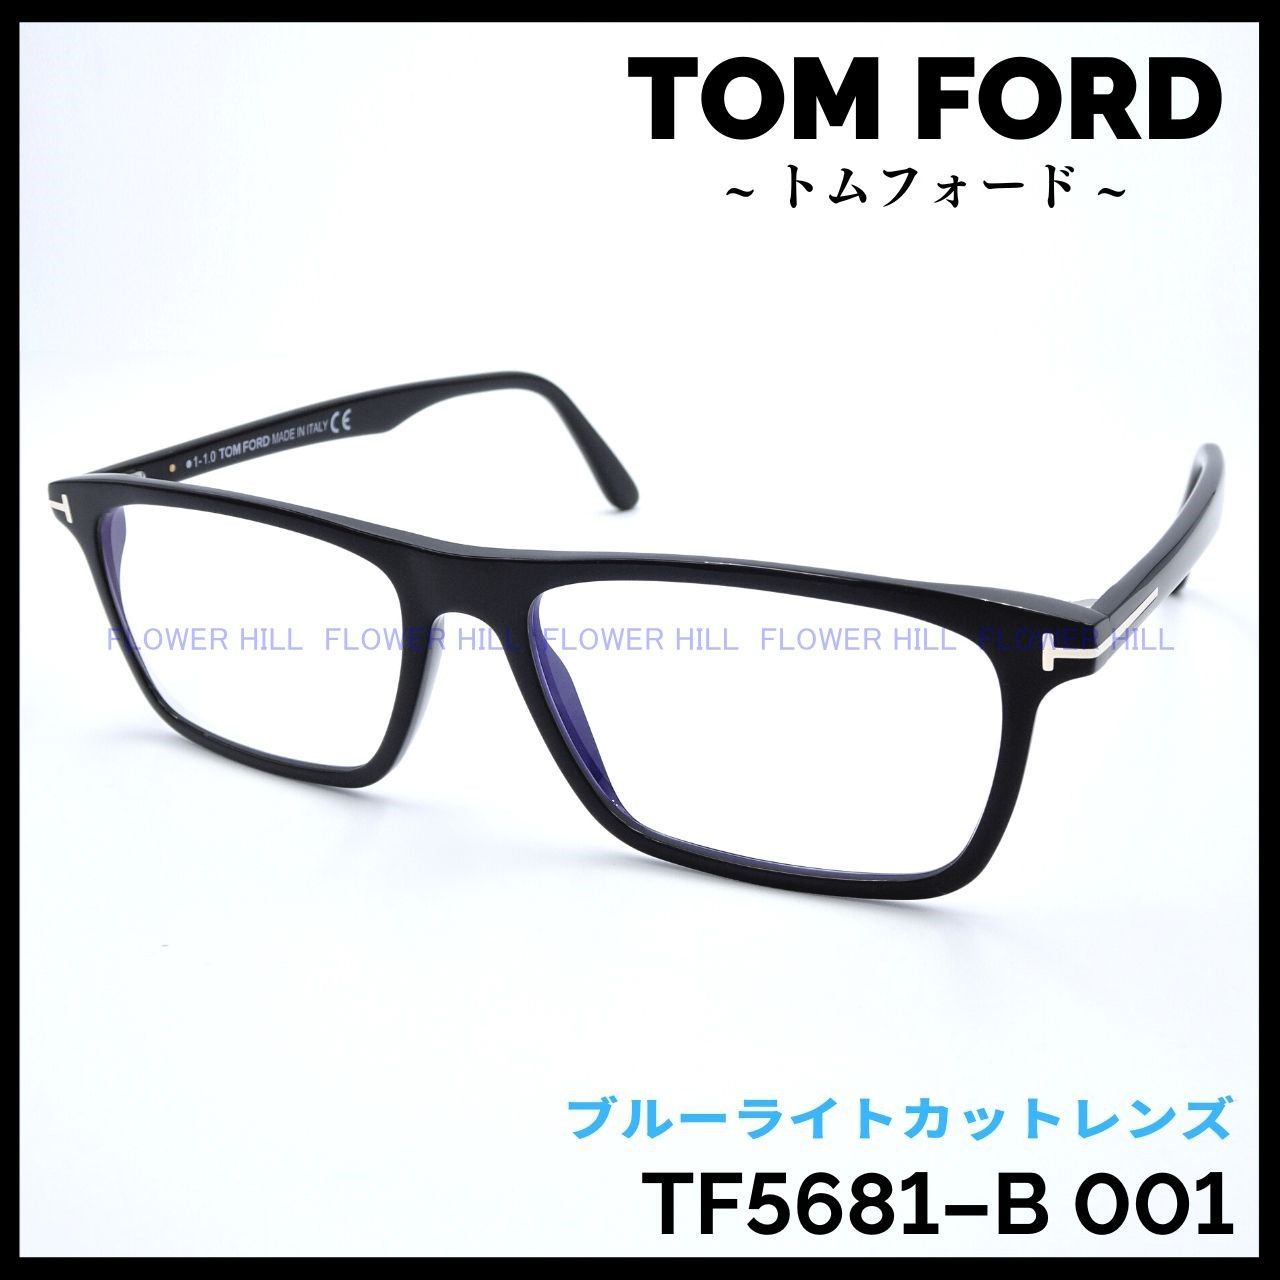 トムフォード メガネ フレーム TF5681-B 001 ブラック スクエア-www